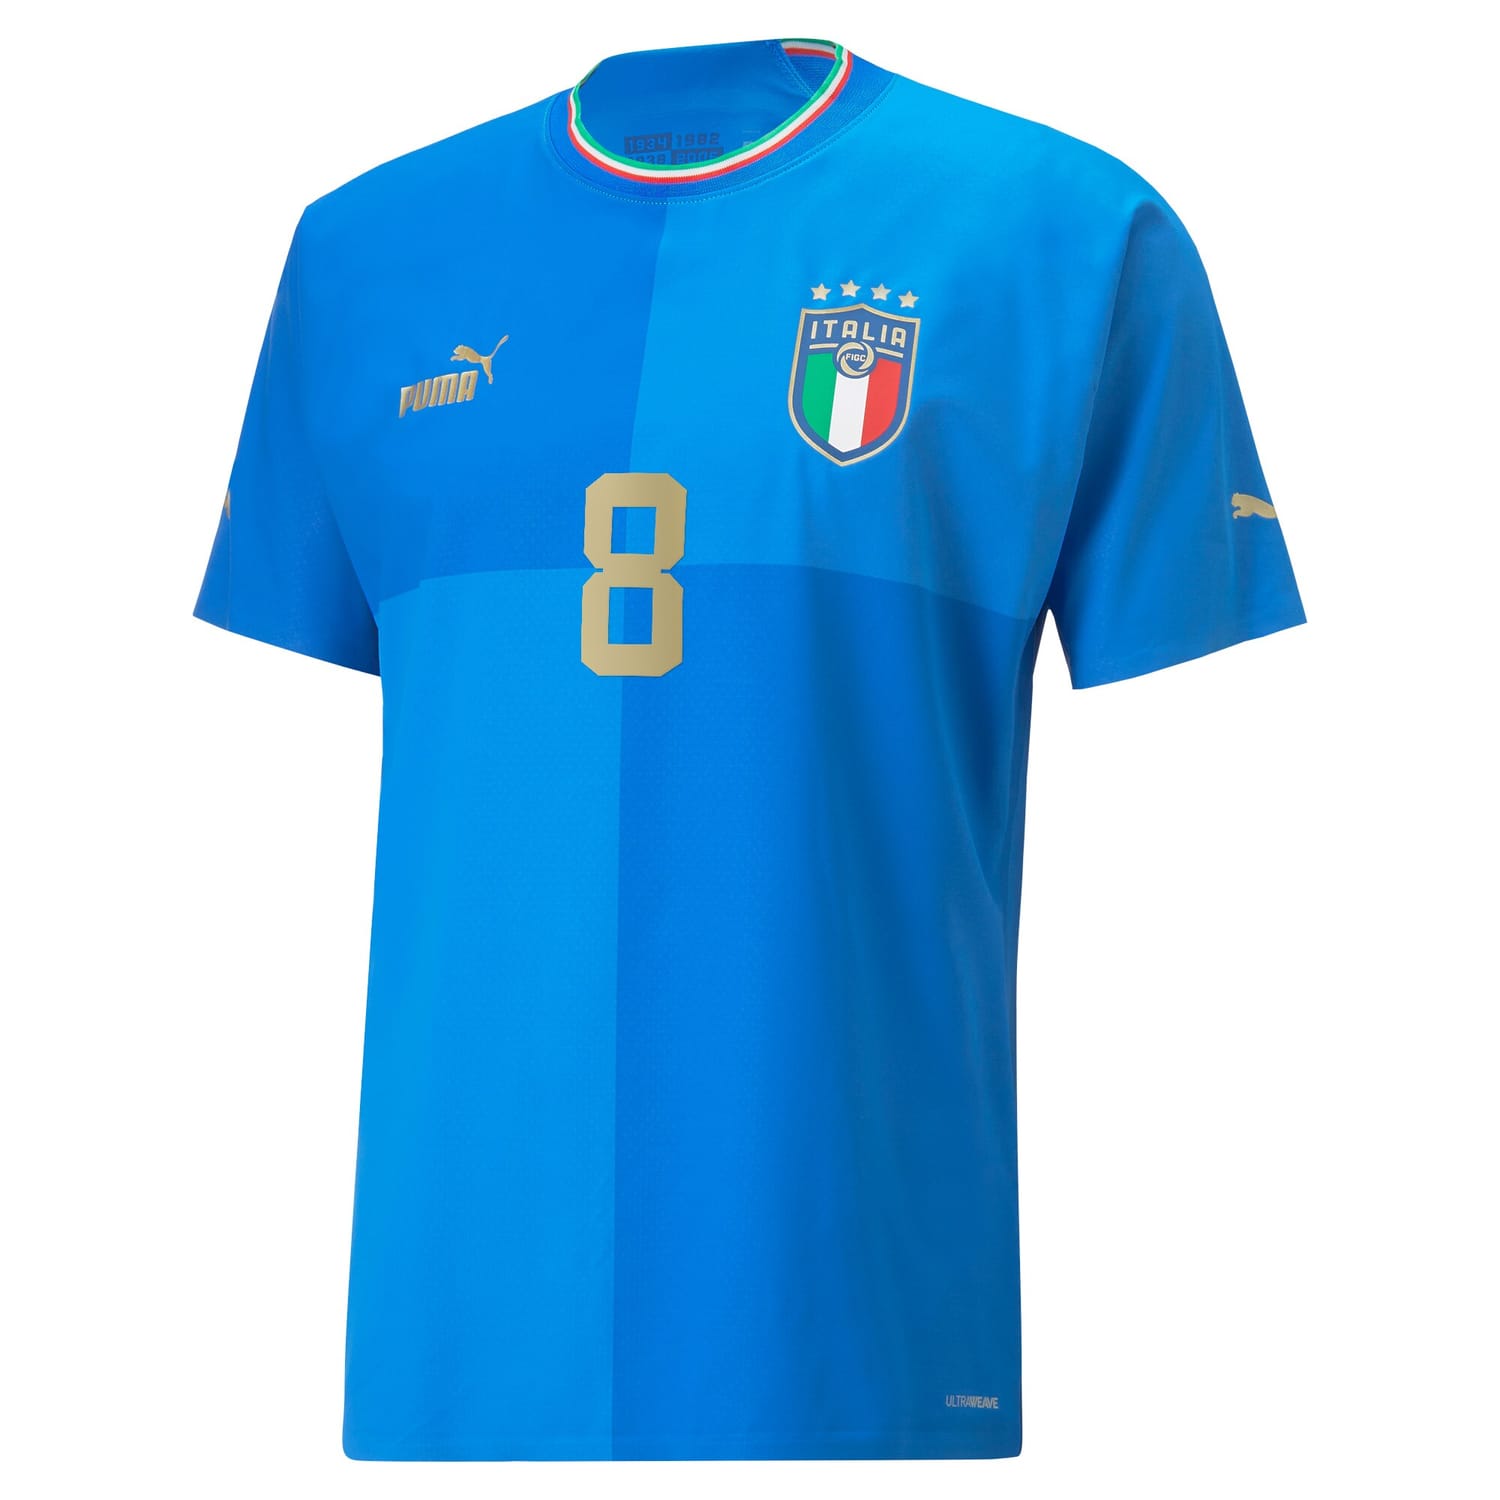 Italy National Team Home Authentic Jersey Shirt Blue 2022-23 player Jorginho printing for Men